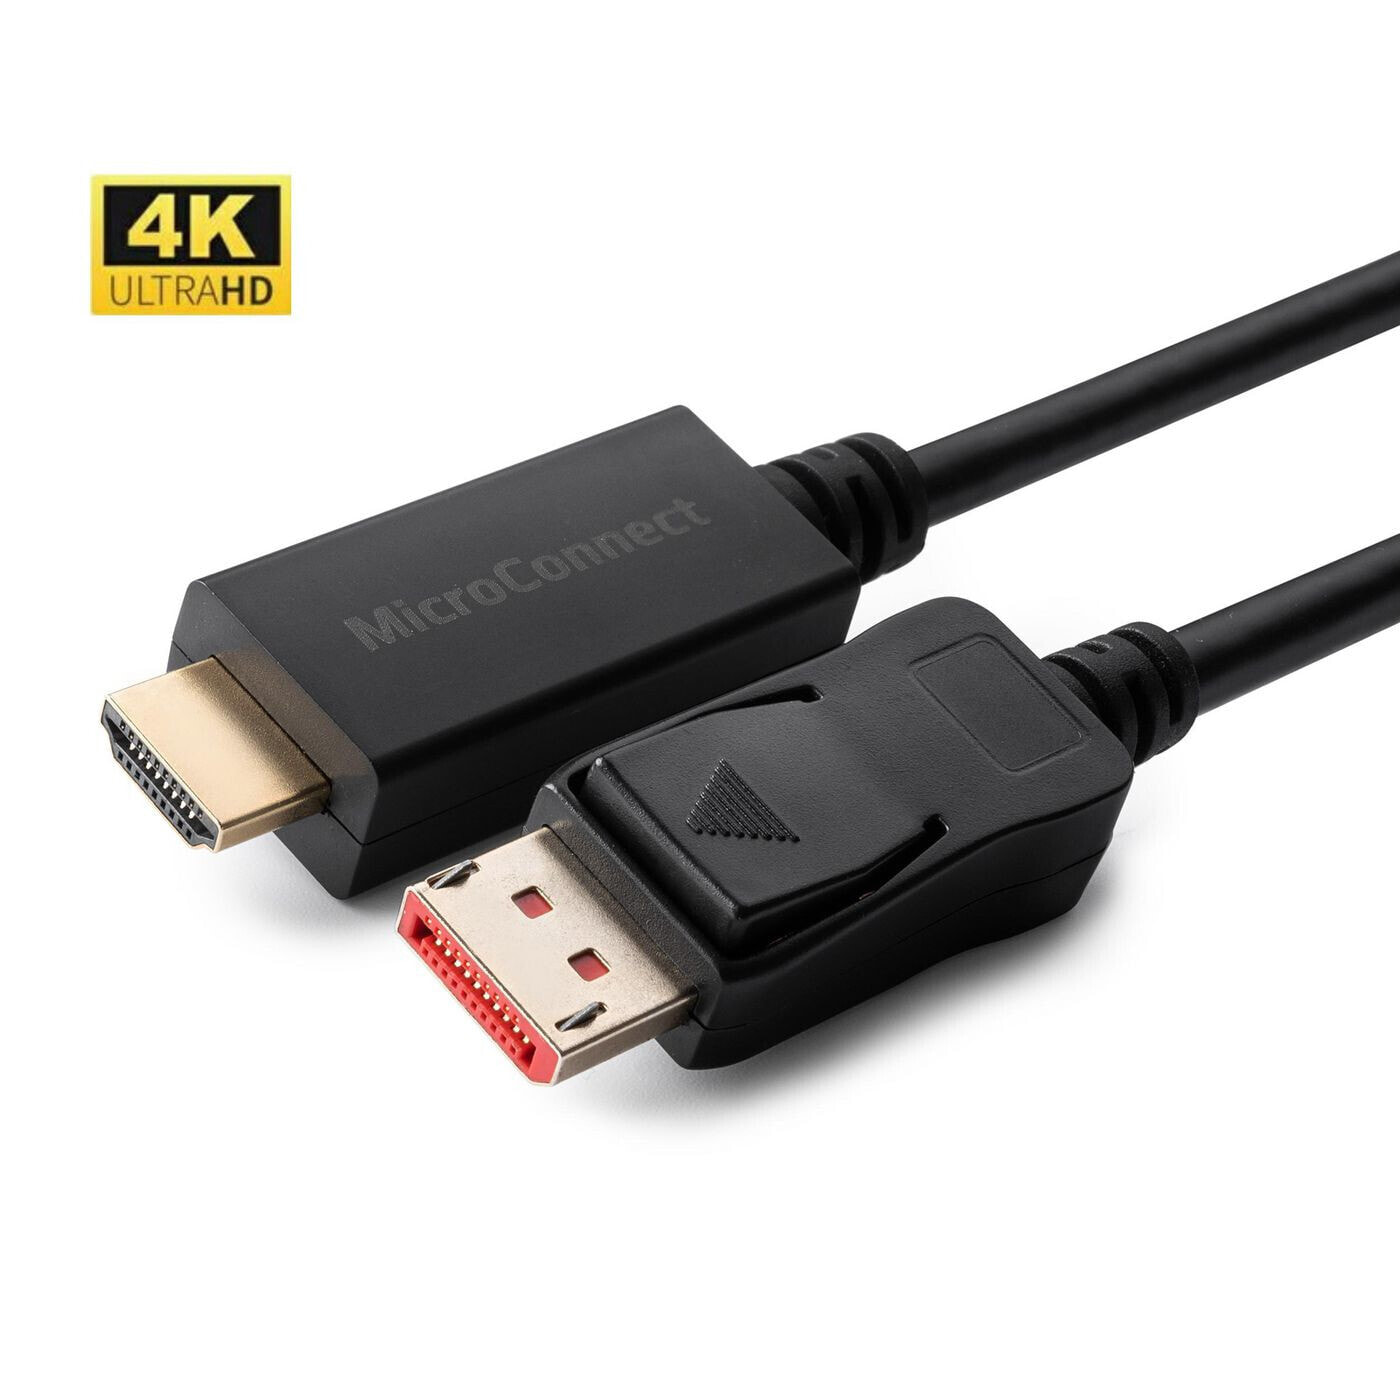 MC-DP-HDMI-10004K - 10 m - DisplayPort - 3840 x 2160 pixels - Black - 250 g - 320 g